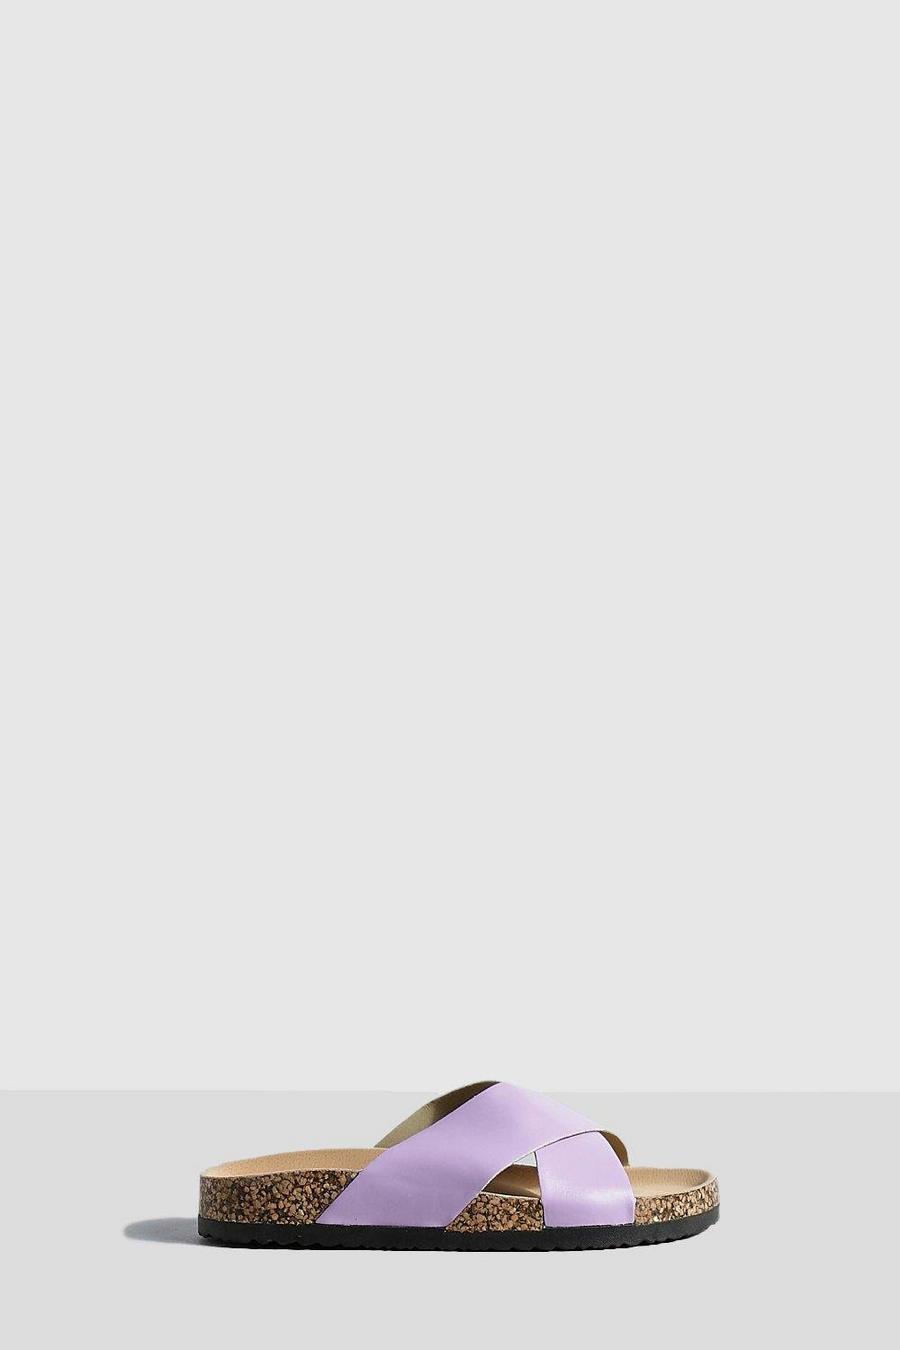 Sandalias con tiras cruzadas y plantilla moldeada, Lilac viola image number 1